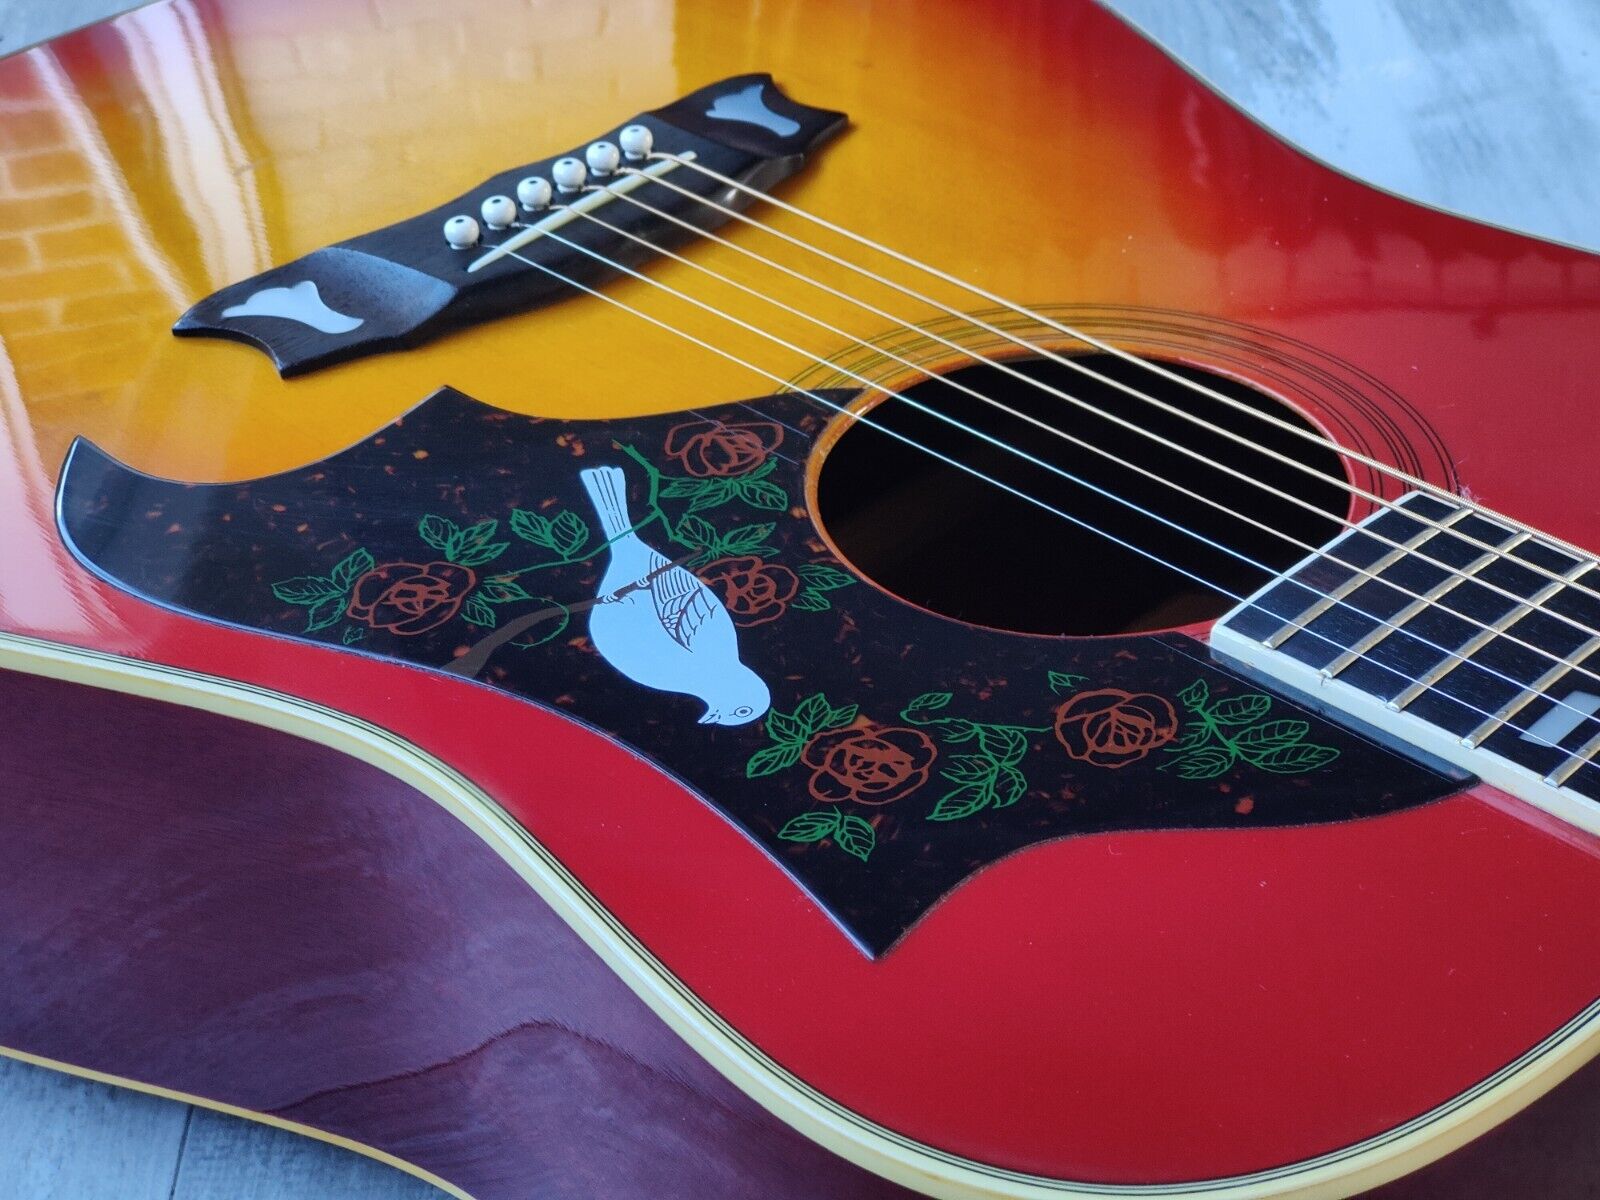 1970's Morris WD-25 Dove Japanese Vintage Acoustic Guitar (Cherry Sunburst)